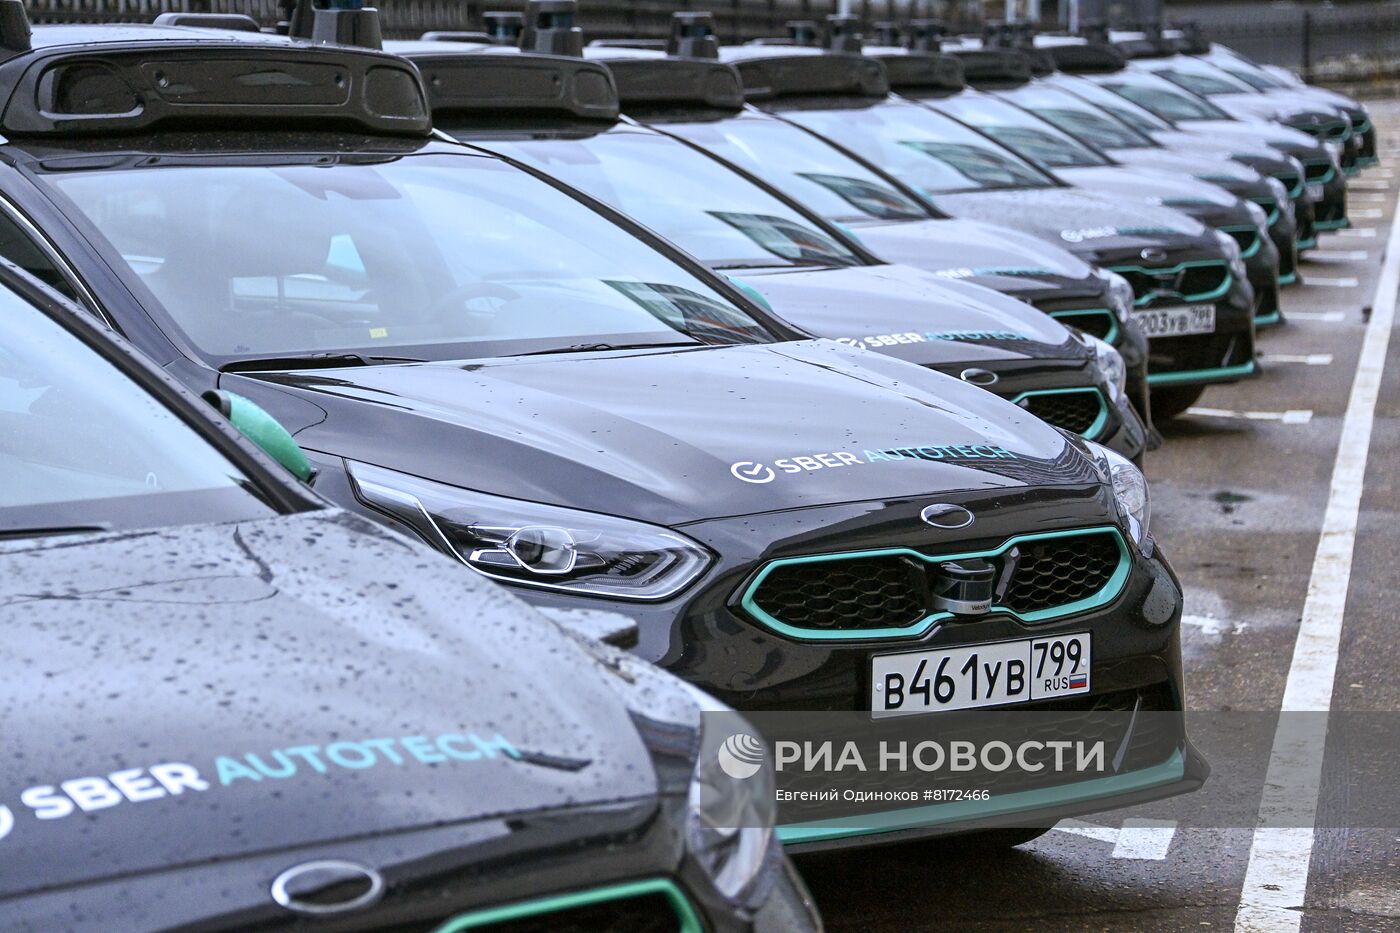 Работа беспилотного автомобиля Sberautotech в Москве